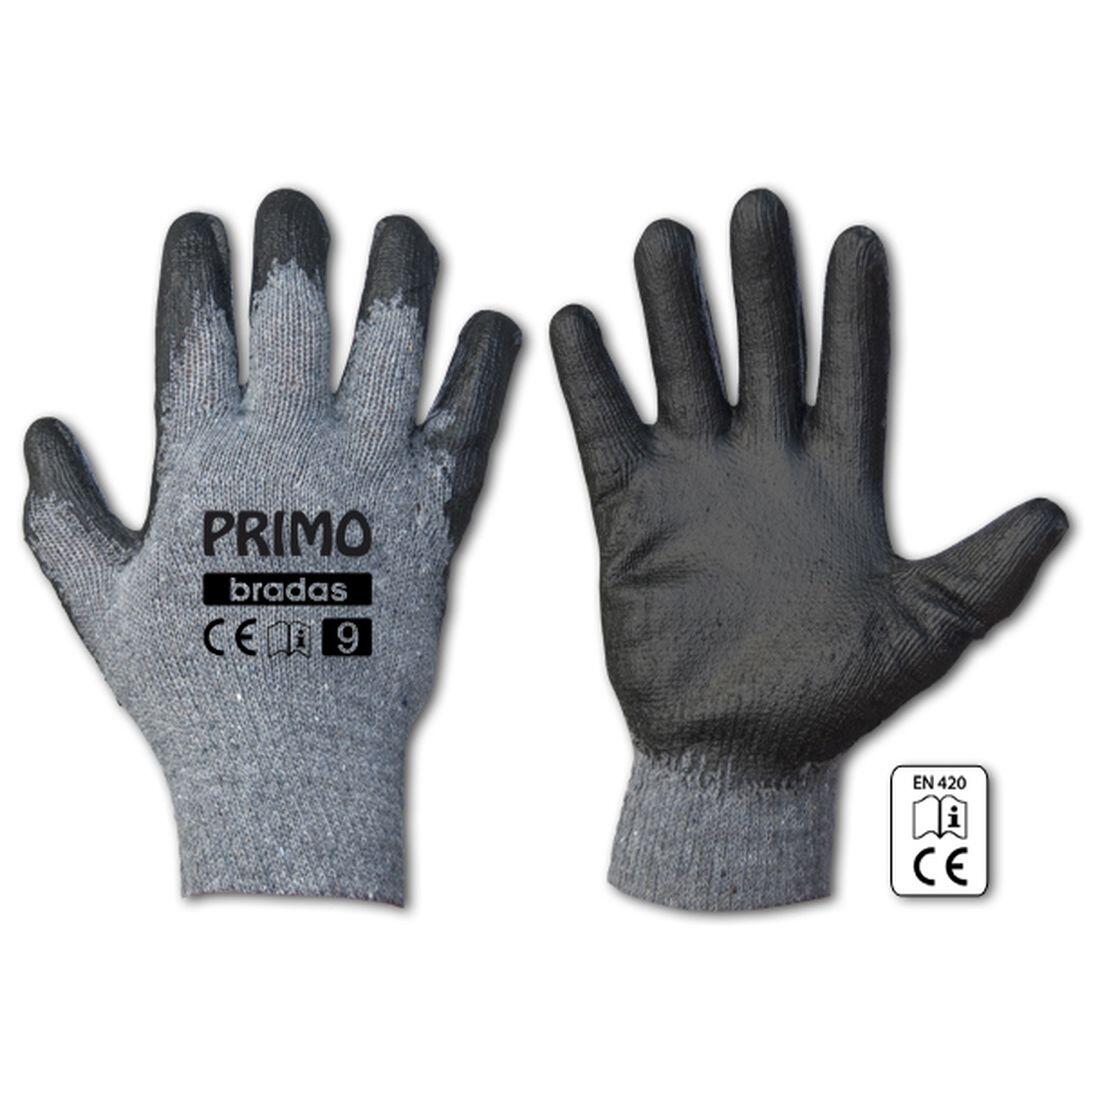 rukavice PRIMO latex  9 0.07 Kg MAXMIX Sklad14 715683 351